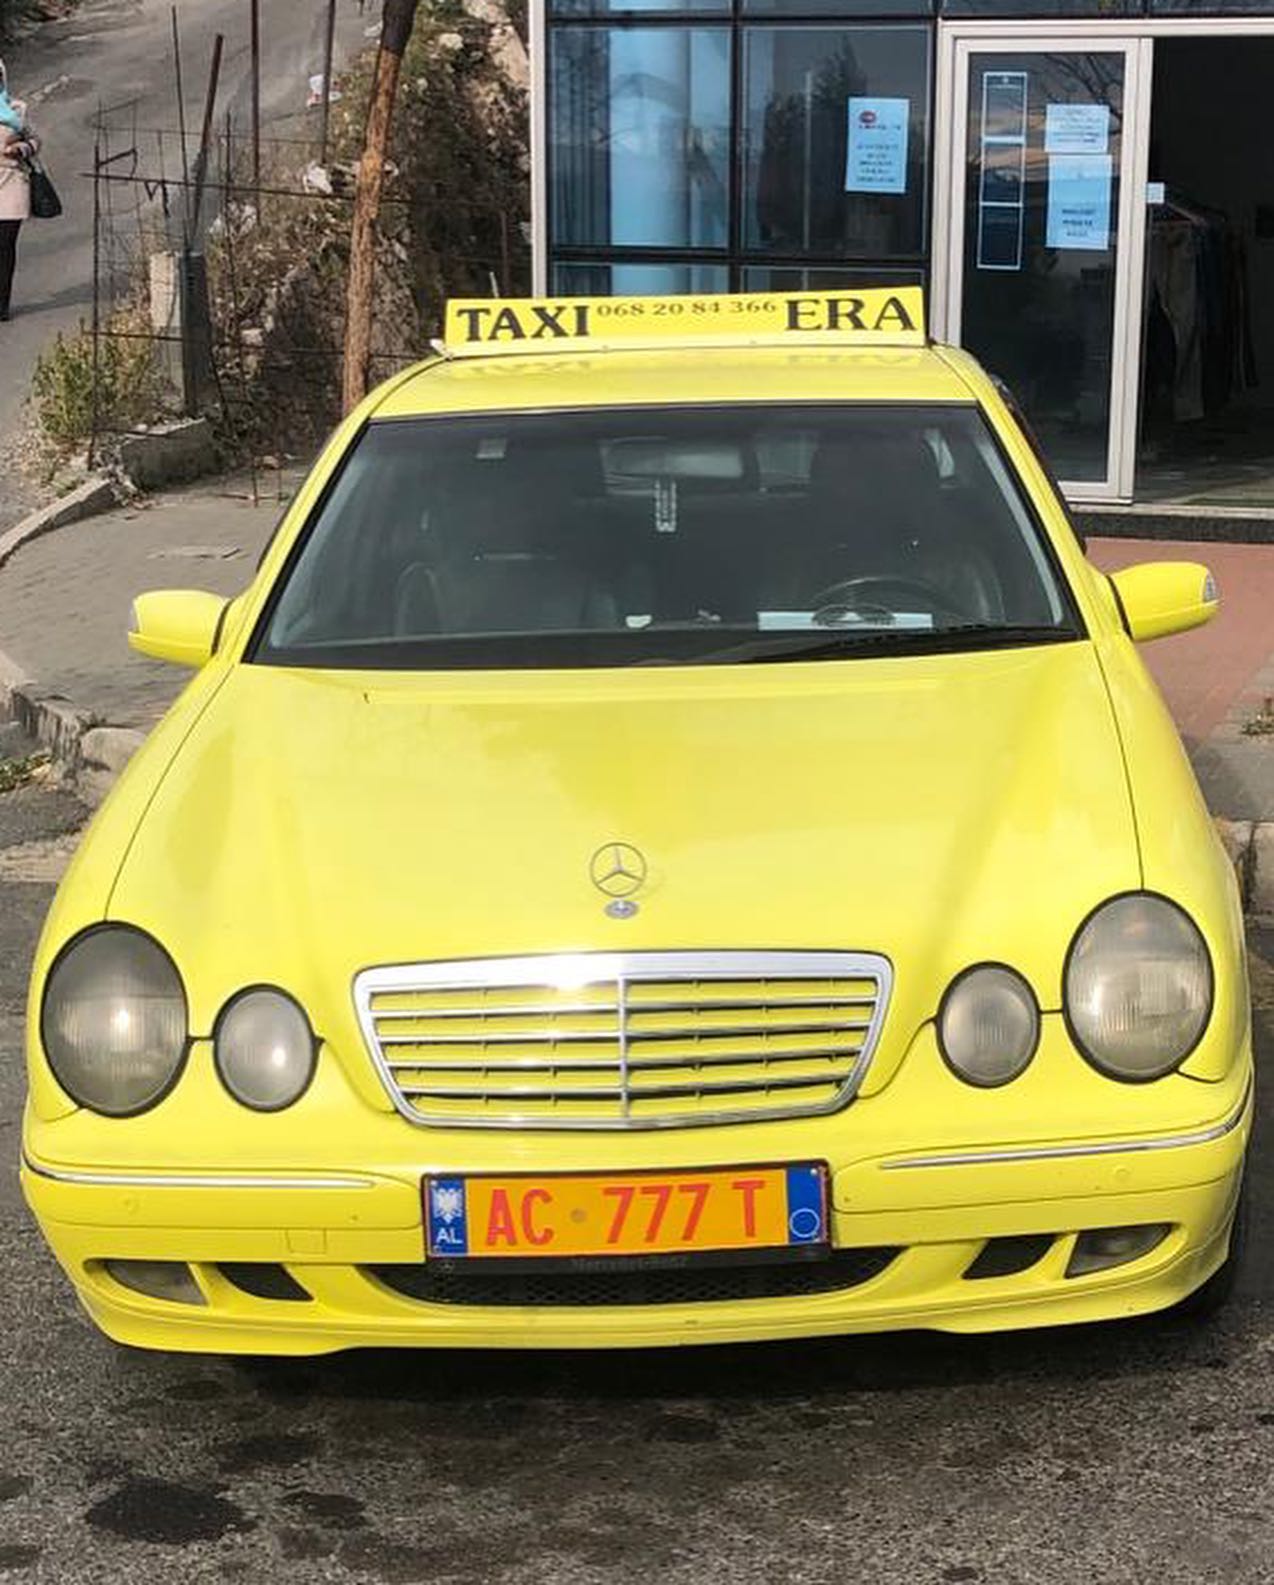 taksi-nonstop-online-lezhe-192